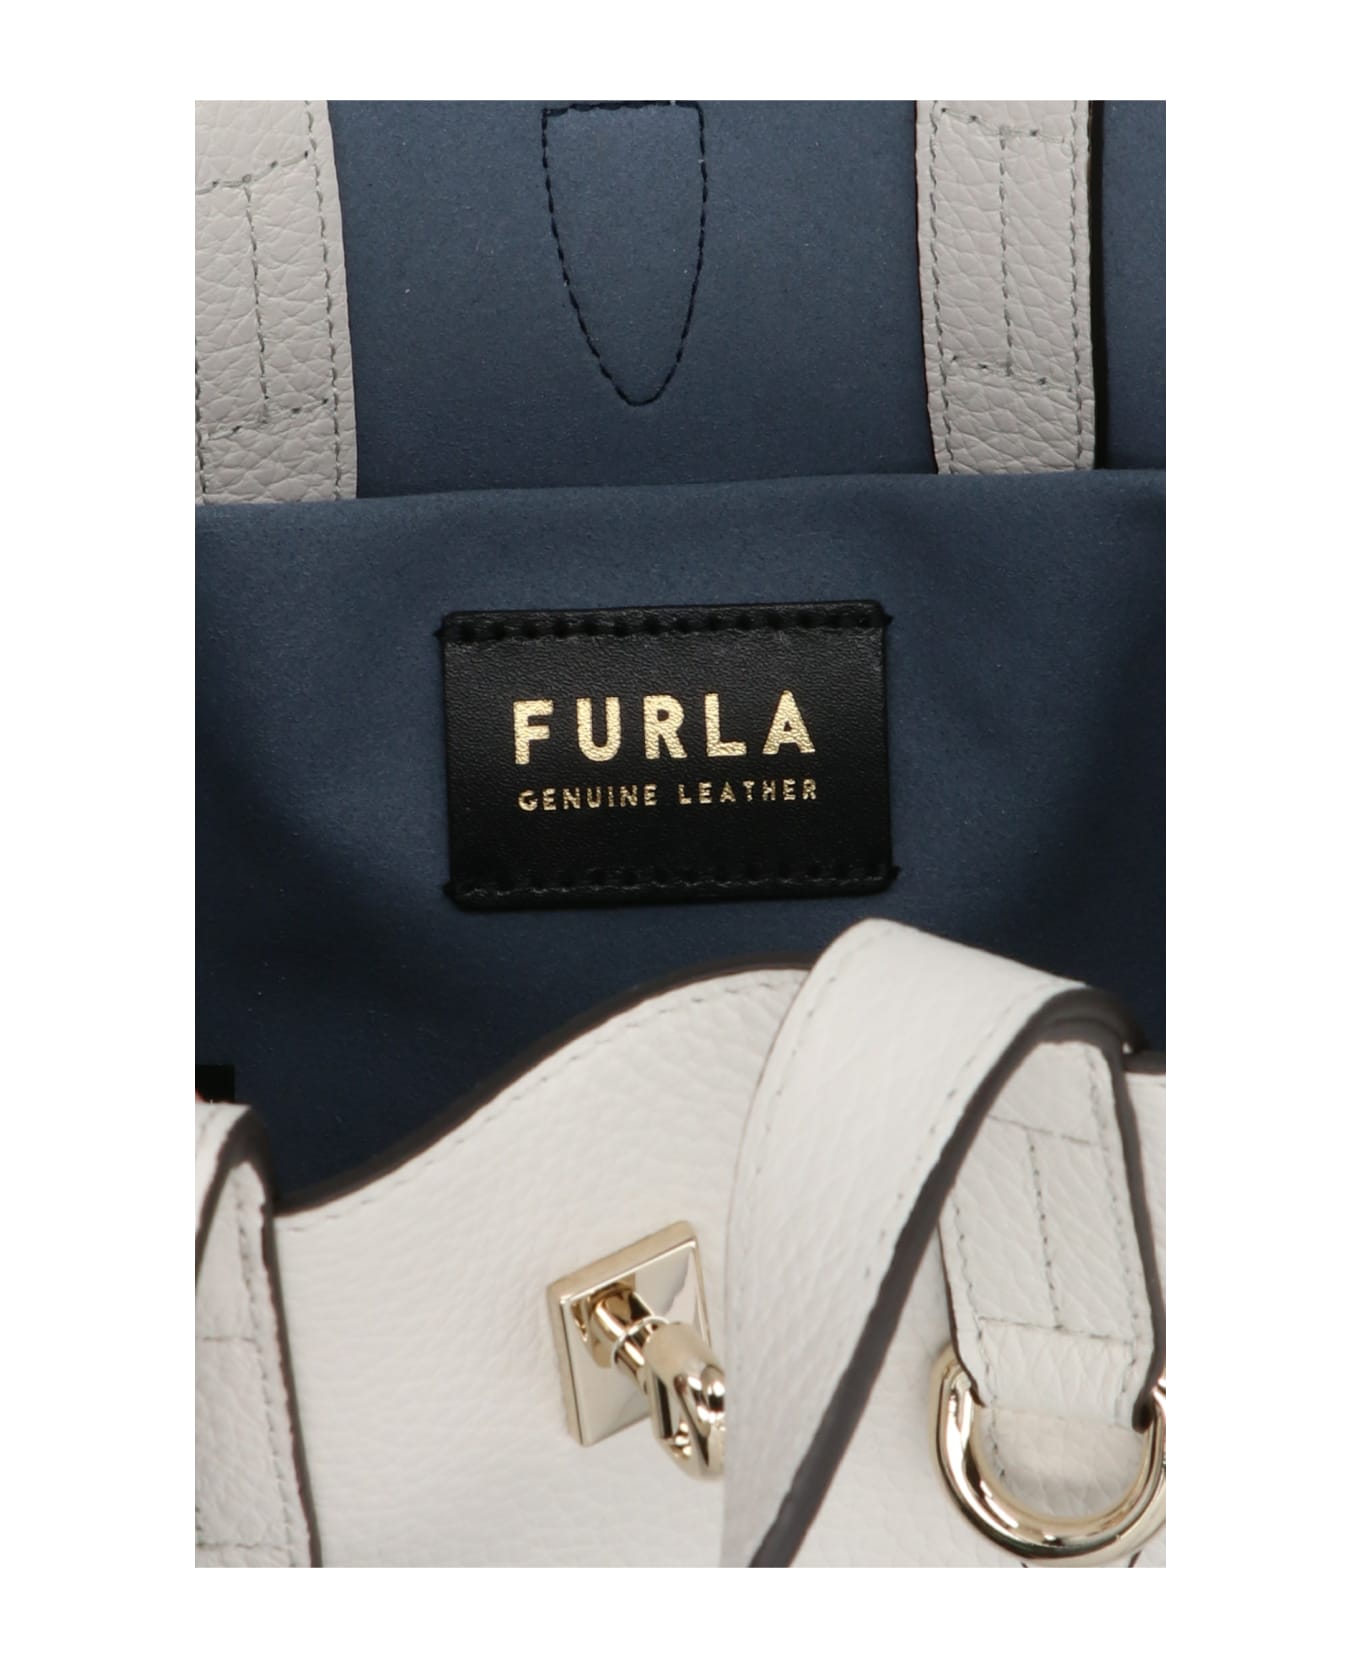 Furla 'furla Net' Handbag - White